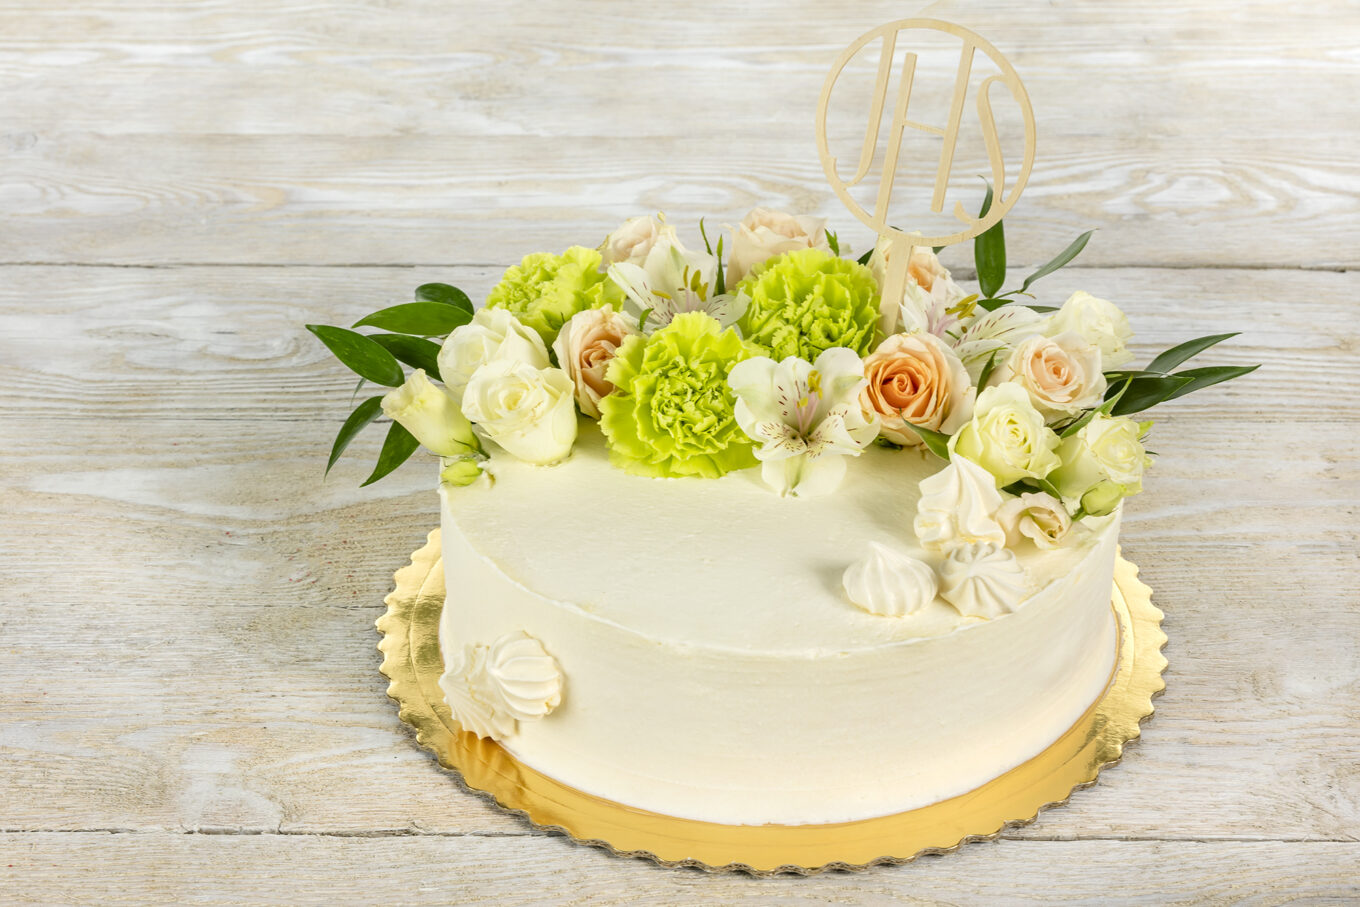 Tarta redonda con flores para comunión. Cukiernia Jacek Placek es sinónimo del sabor de las tartas caseras elaboradas con productos naturales.